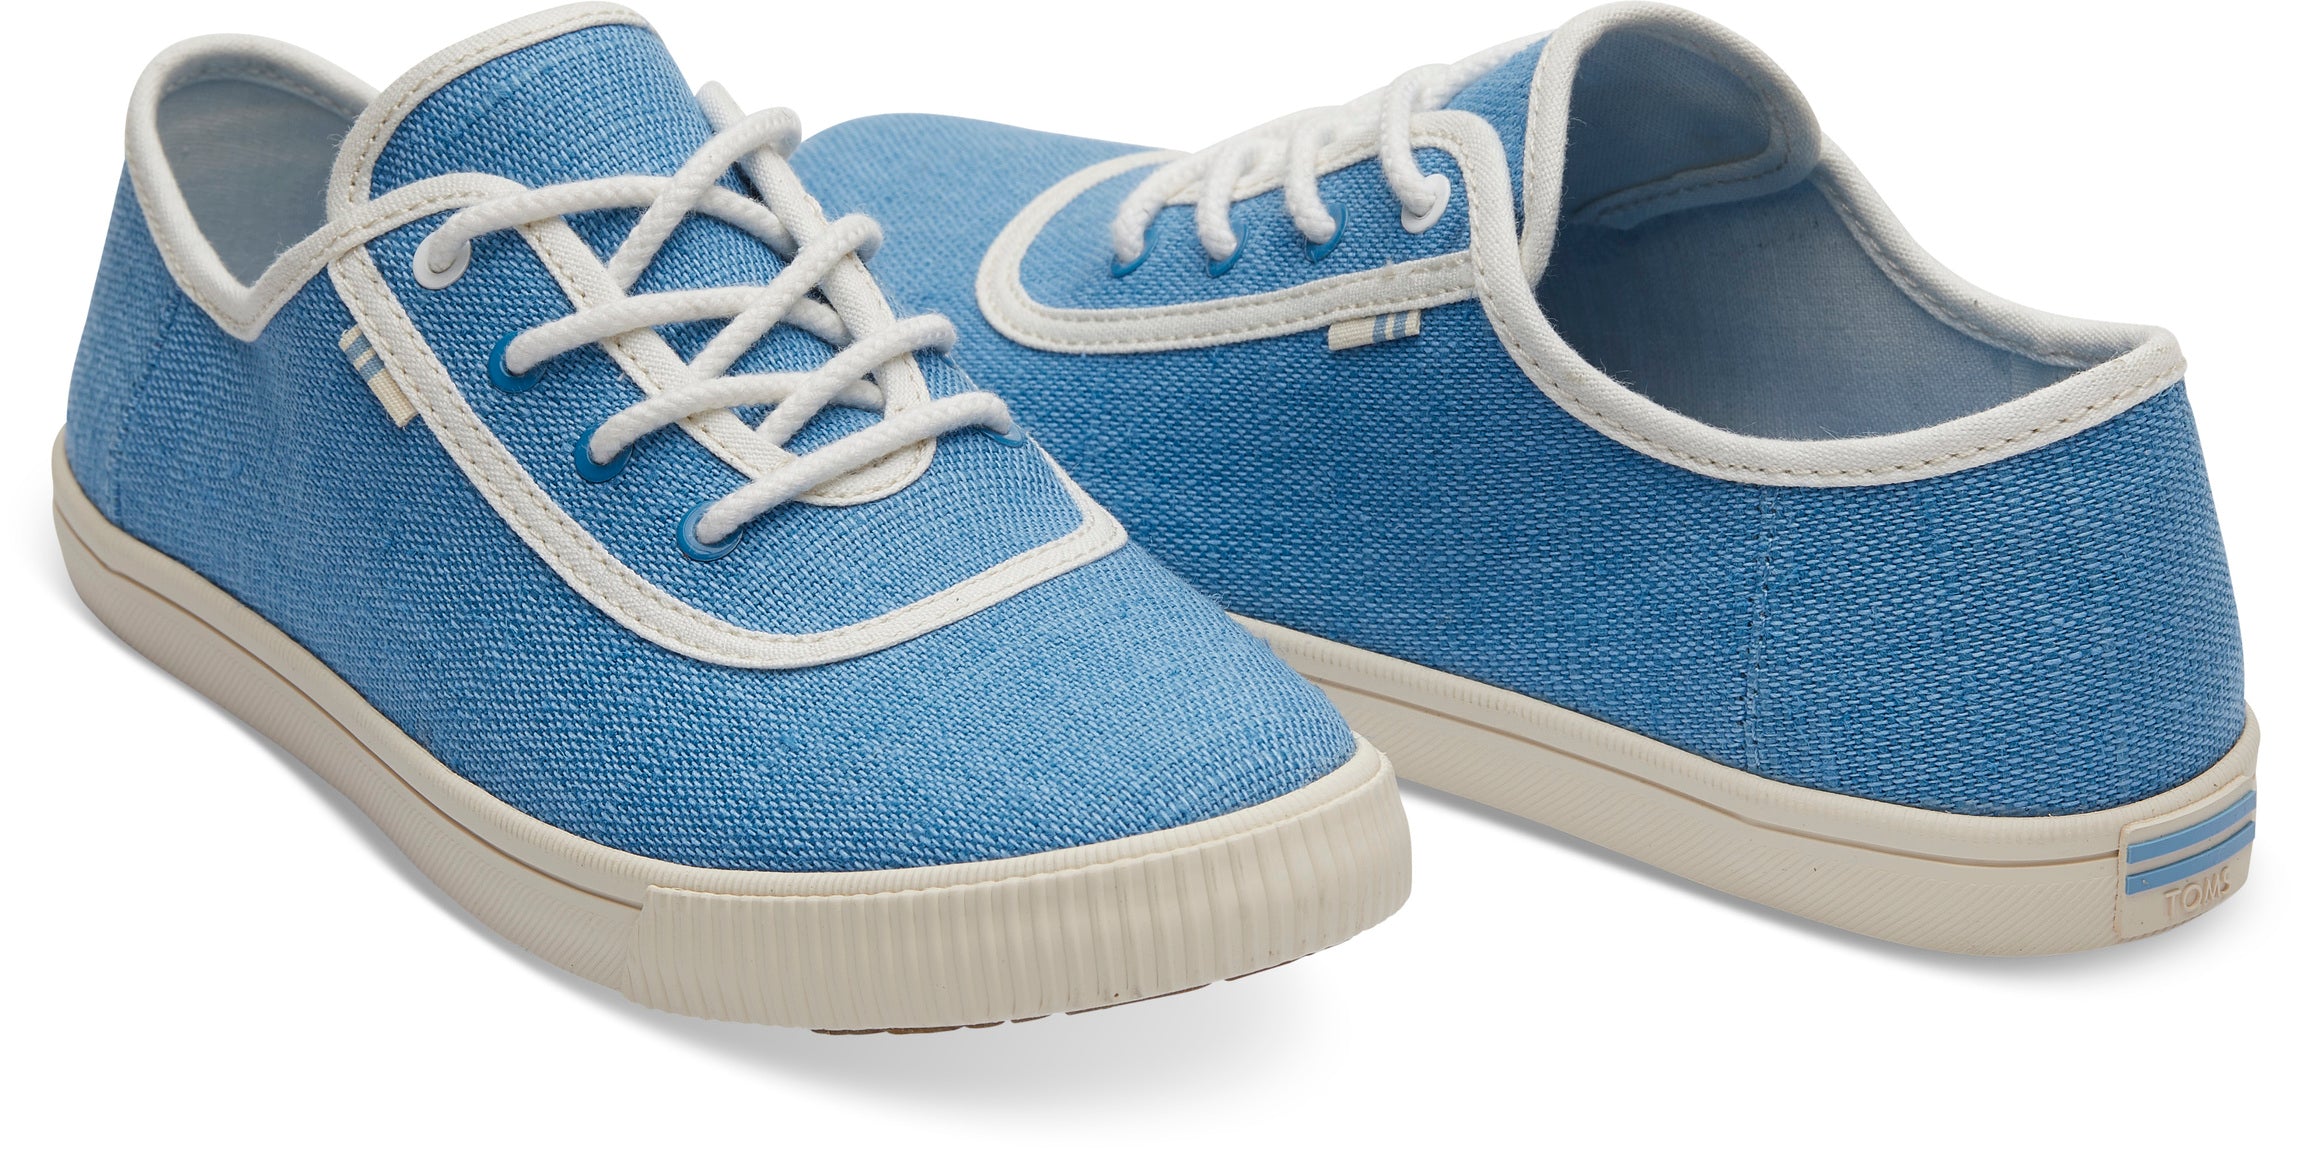 Dámské modré tenisky TOMS Bliss Blue Carmel Sneakers